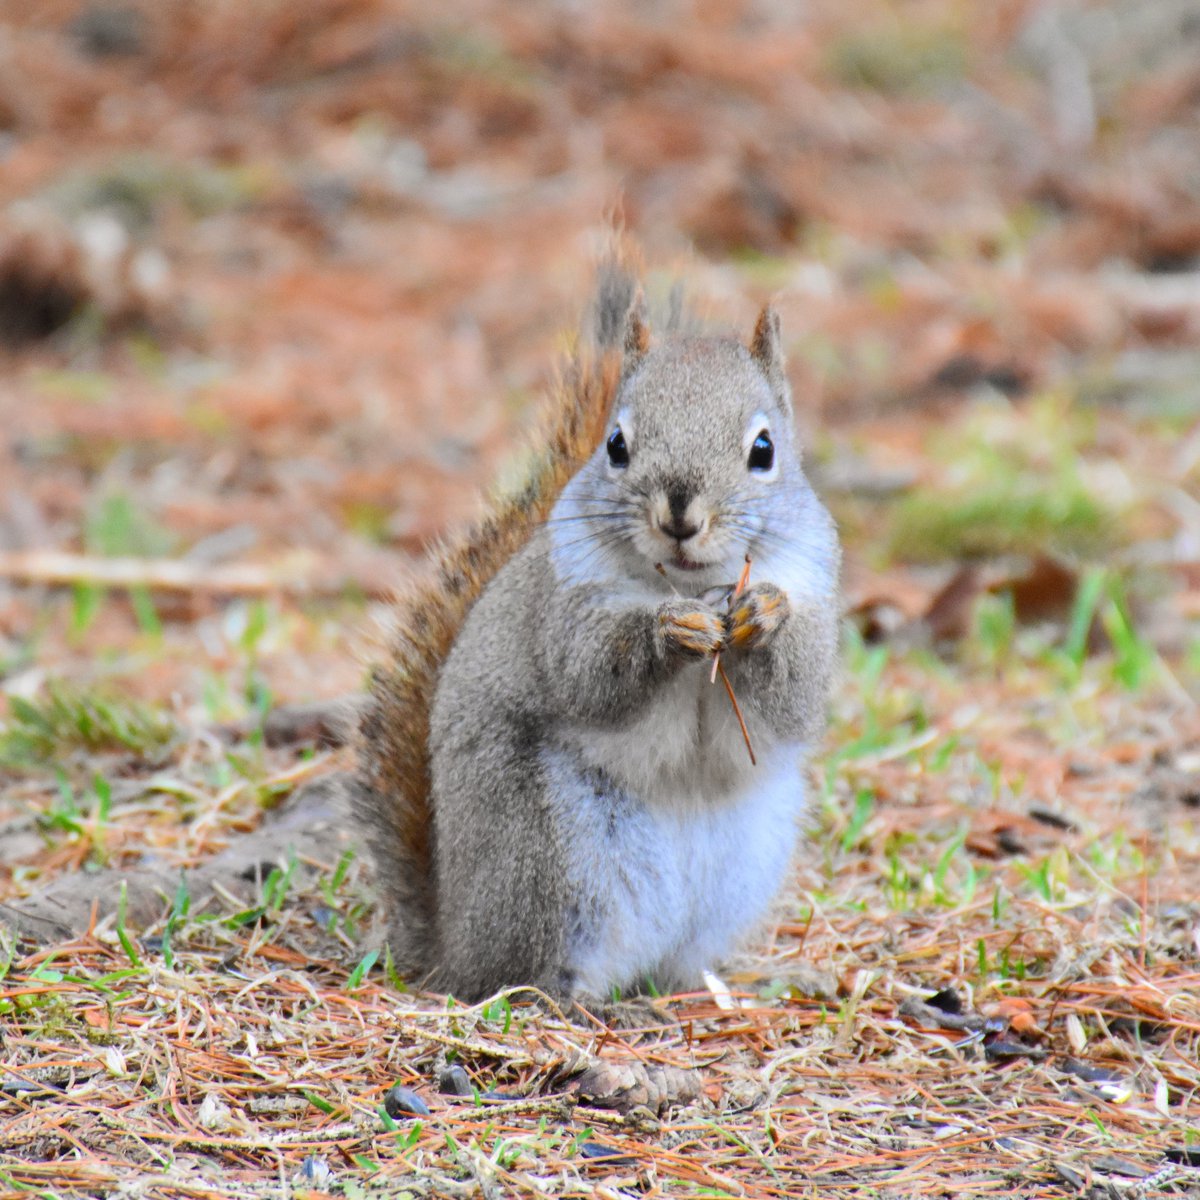 Cute creature of the day!✌😏💫🐿

#squirrel #redsquirrel #wildlife #furryfriend #wildlifephotography #naturewhisperer